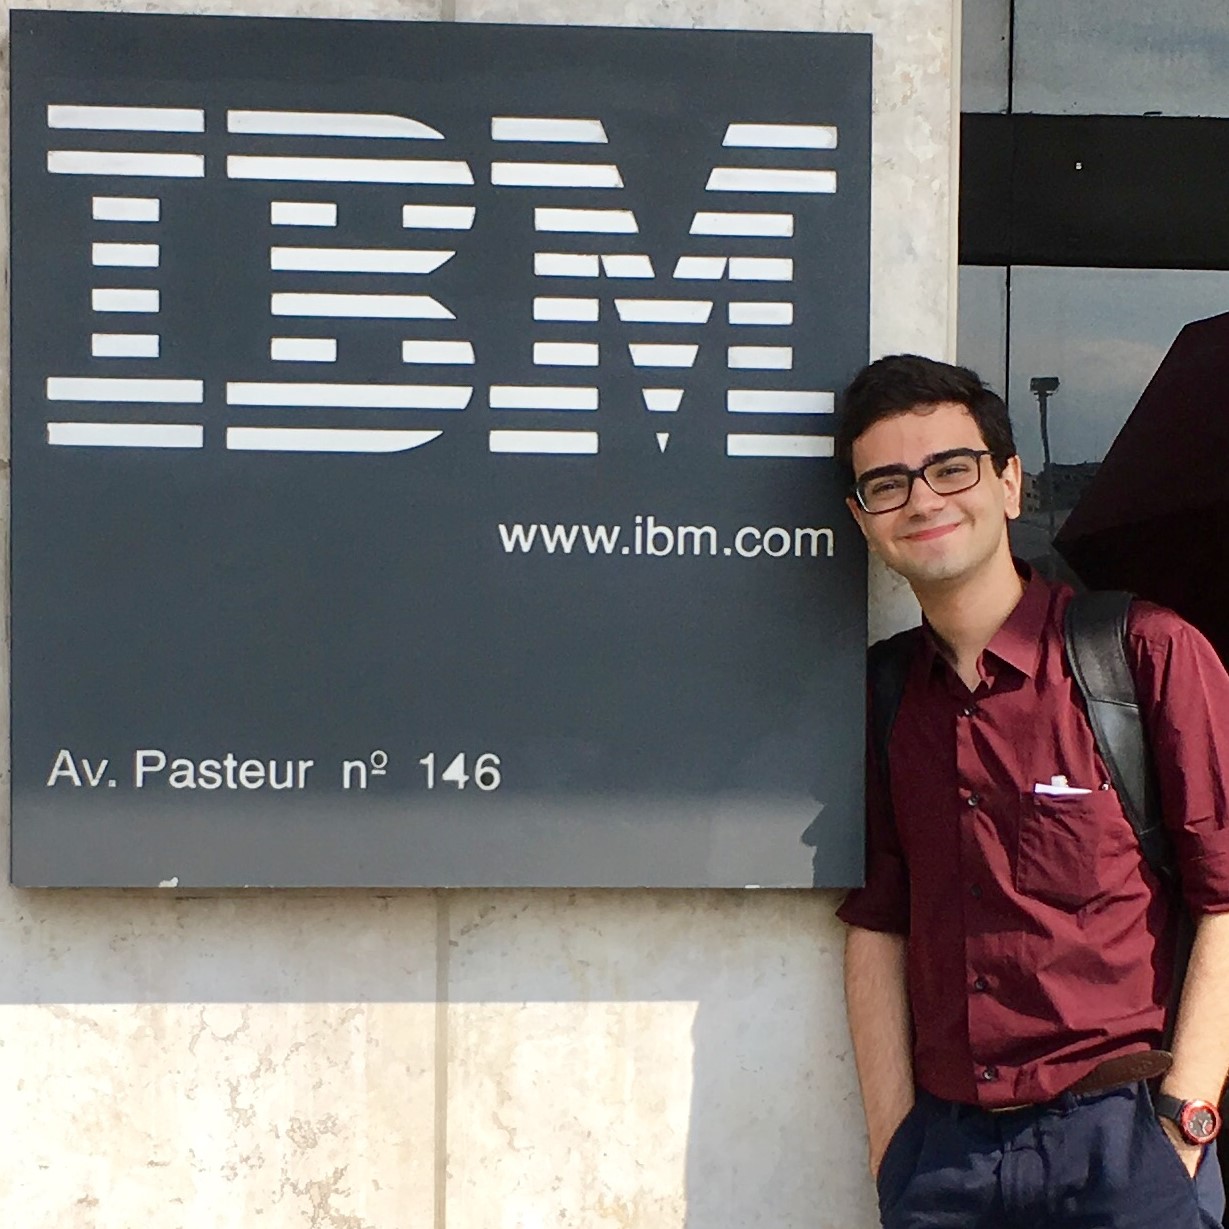 Foto minha em frente ao prédio da IBM no Rio de Janeiro. Ao meu lado está uma placa quadrada, com o logotipo da IBM brando, num fundo preto.